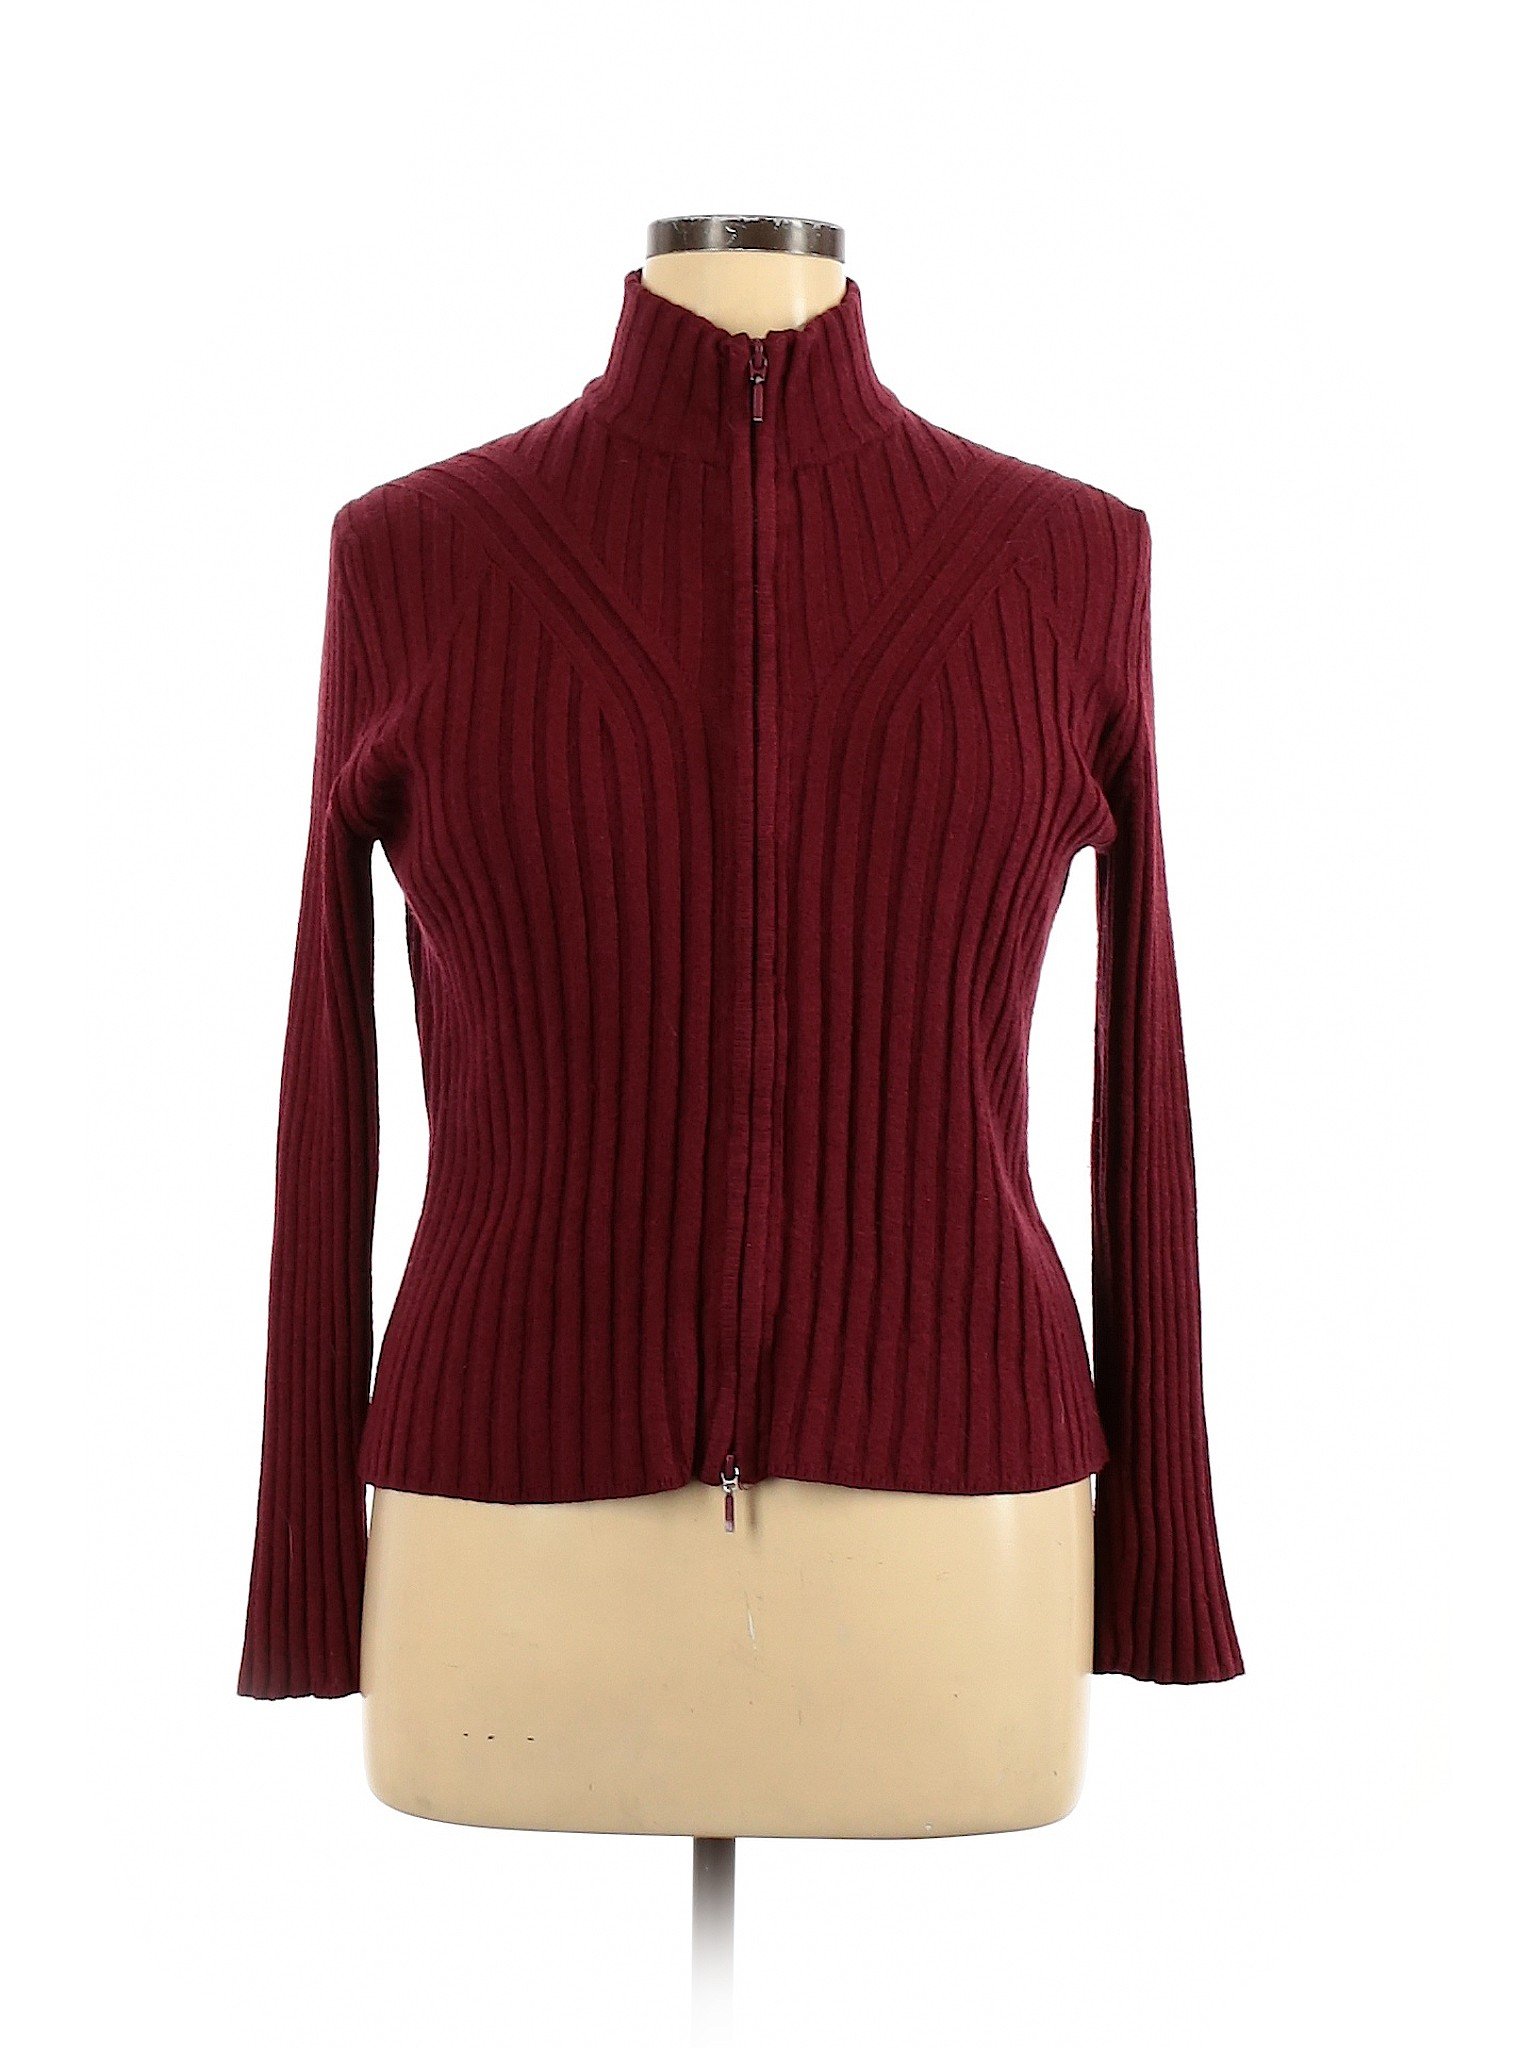 Hillard & Hanson Women Red Jacket XL | eBay